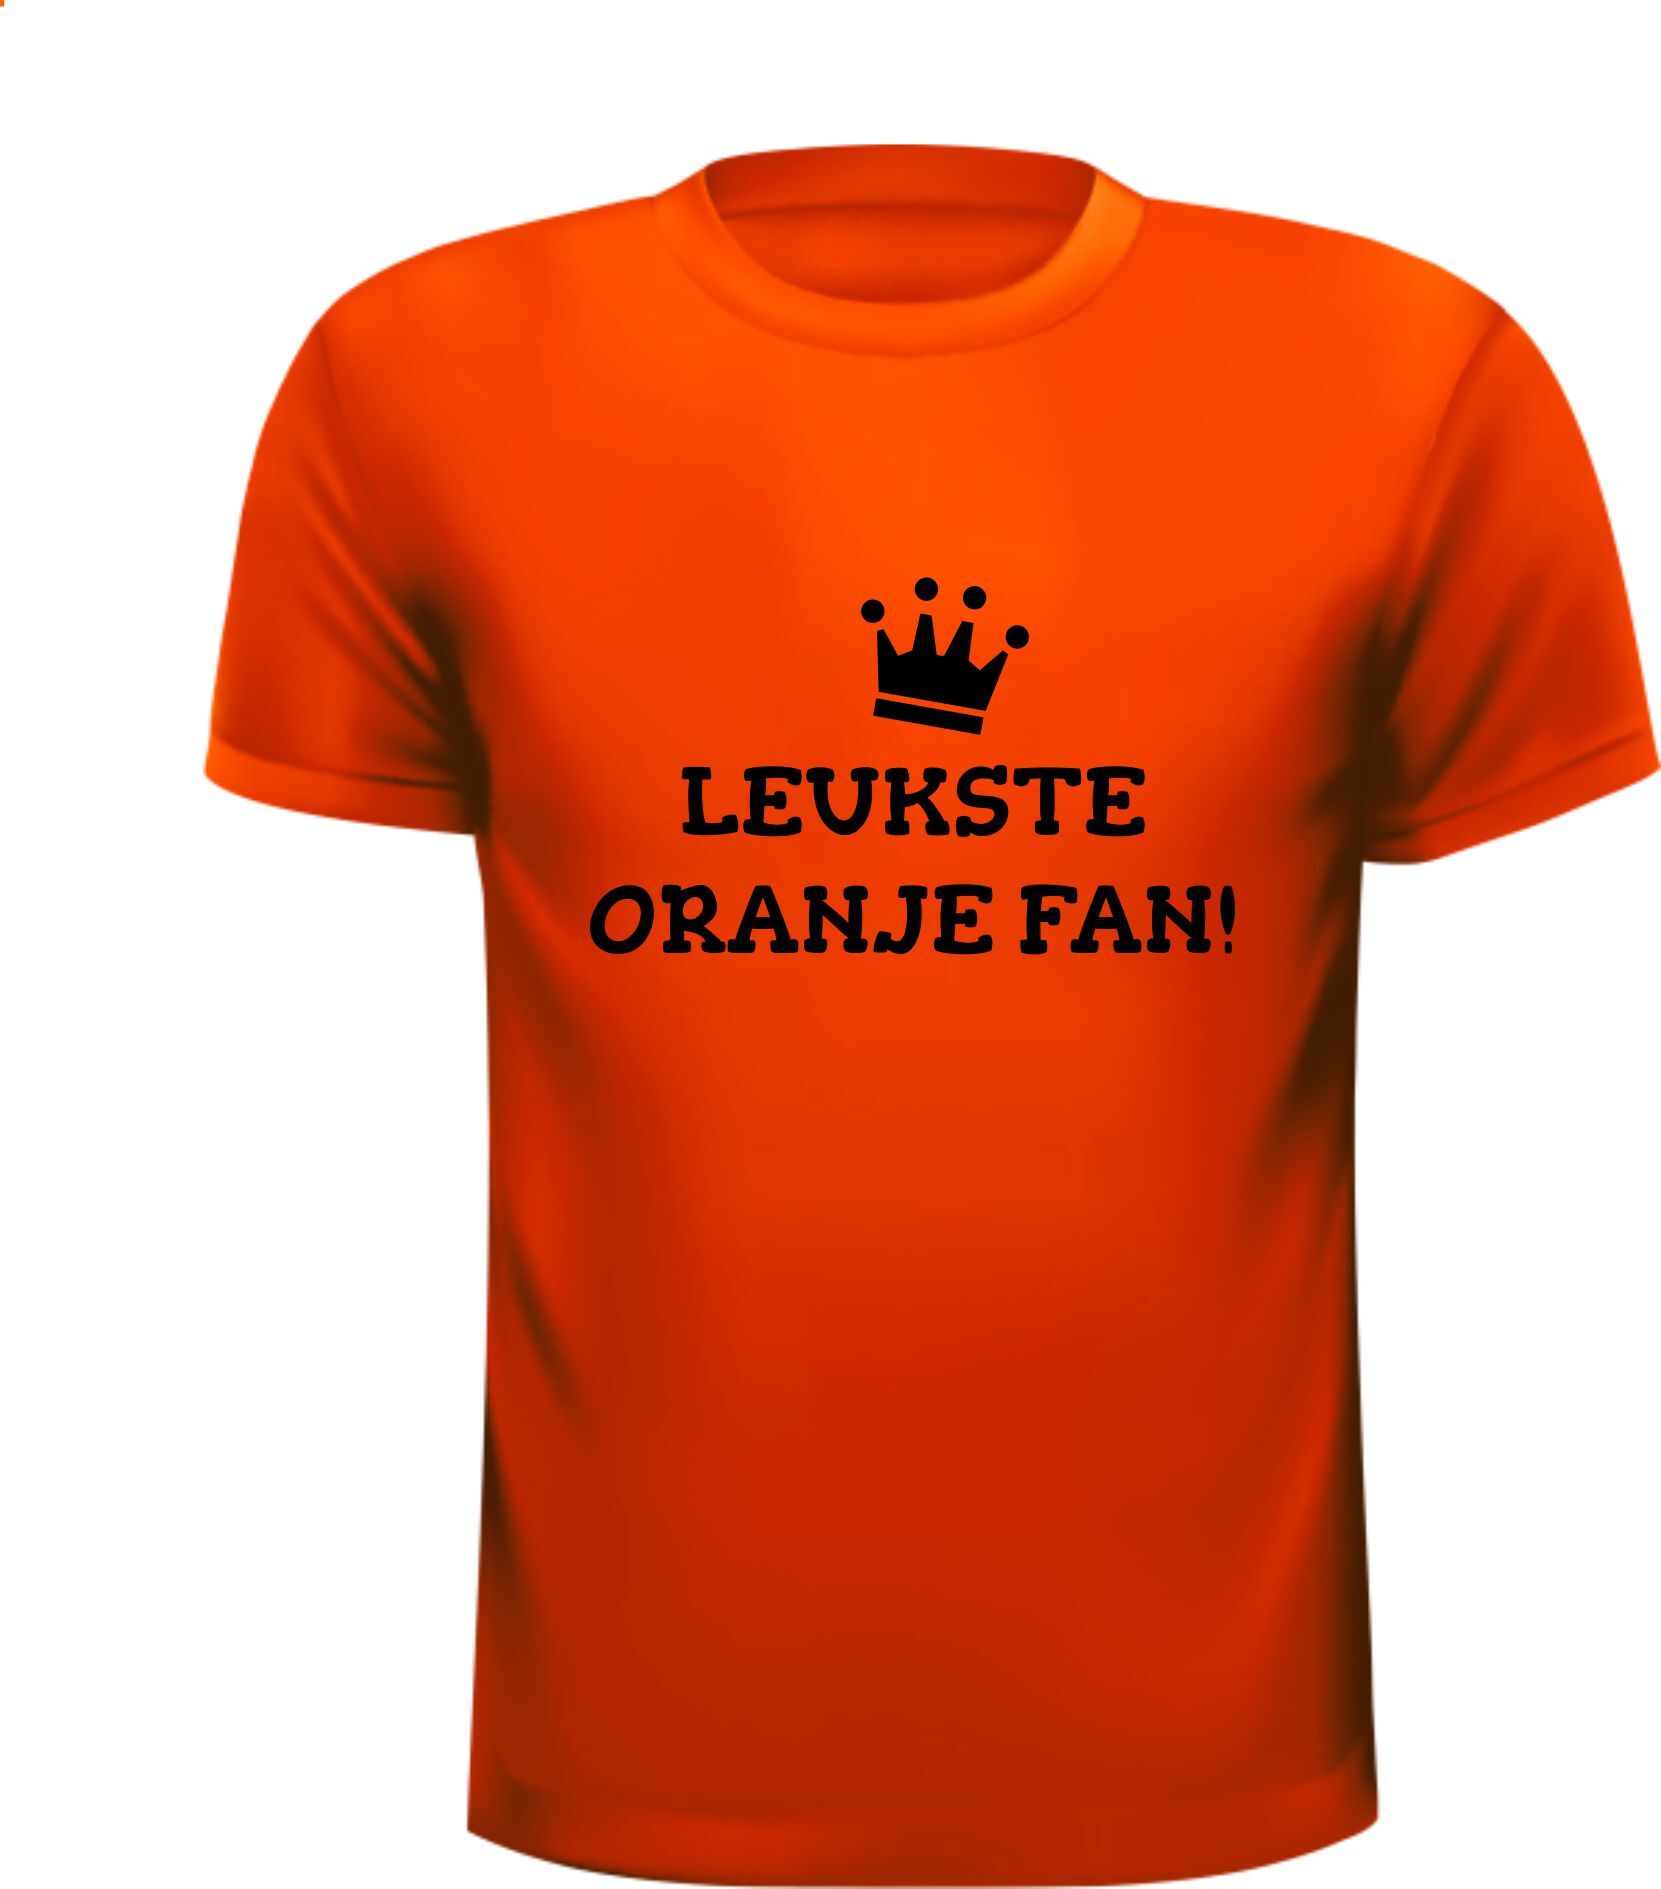 Shirtje voor de leukste oranje fan! Leuk voor Koningsdag